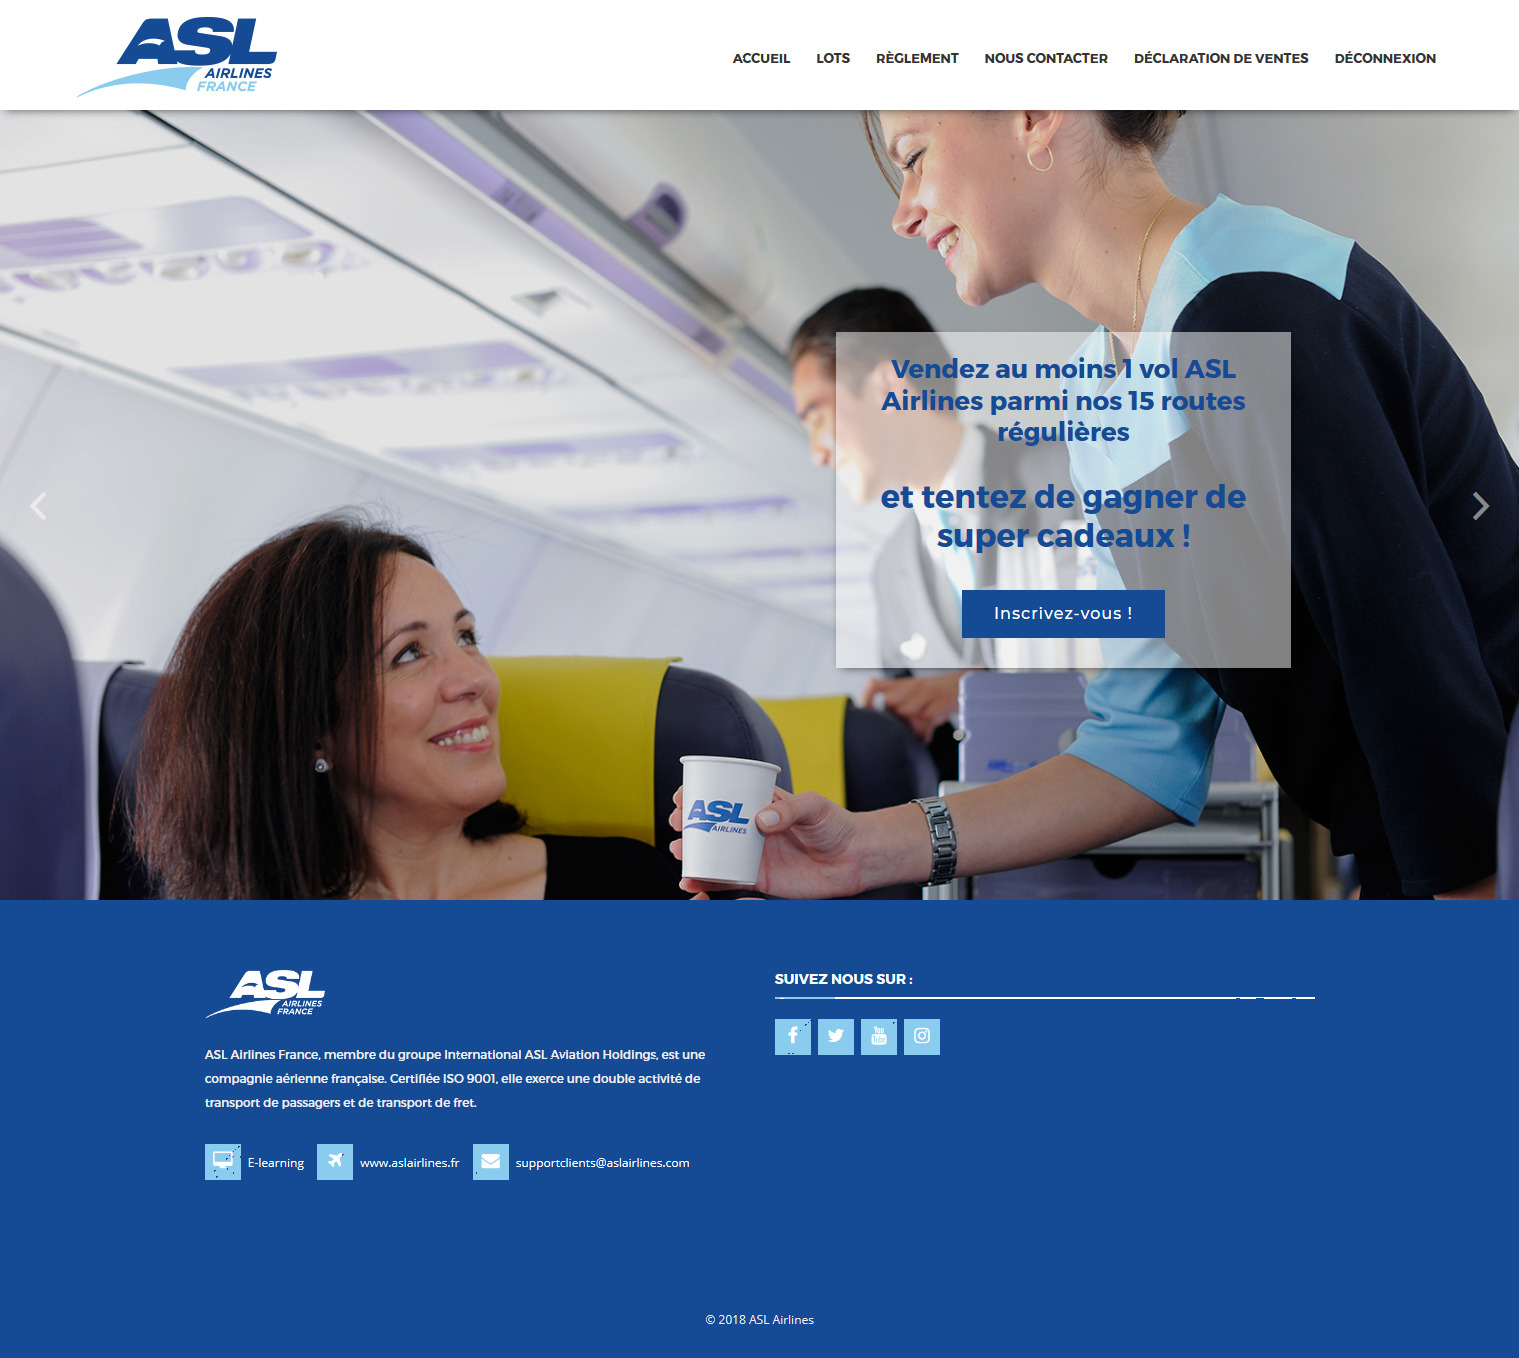 Le challenge de ventes lancé par ASL Airlines France. - DR